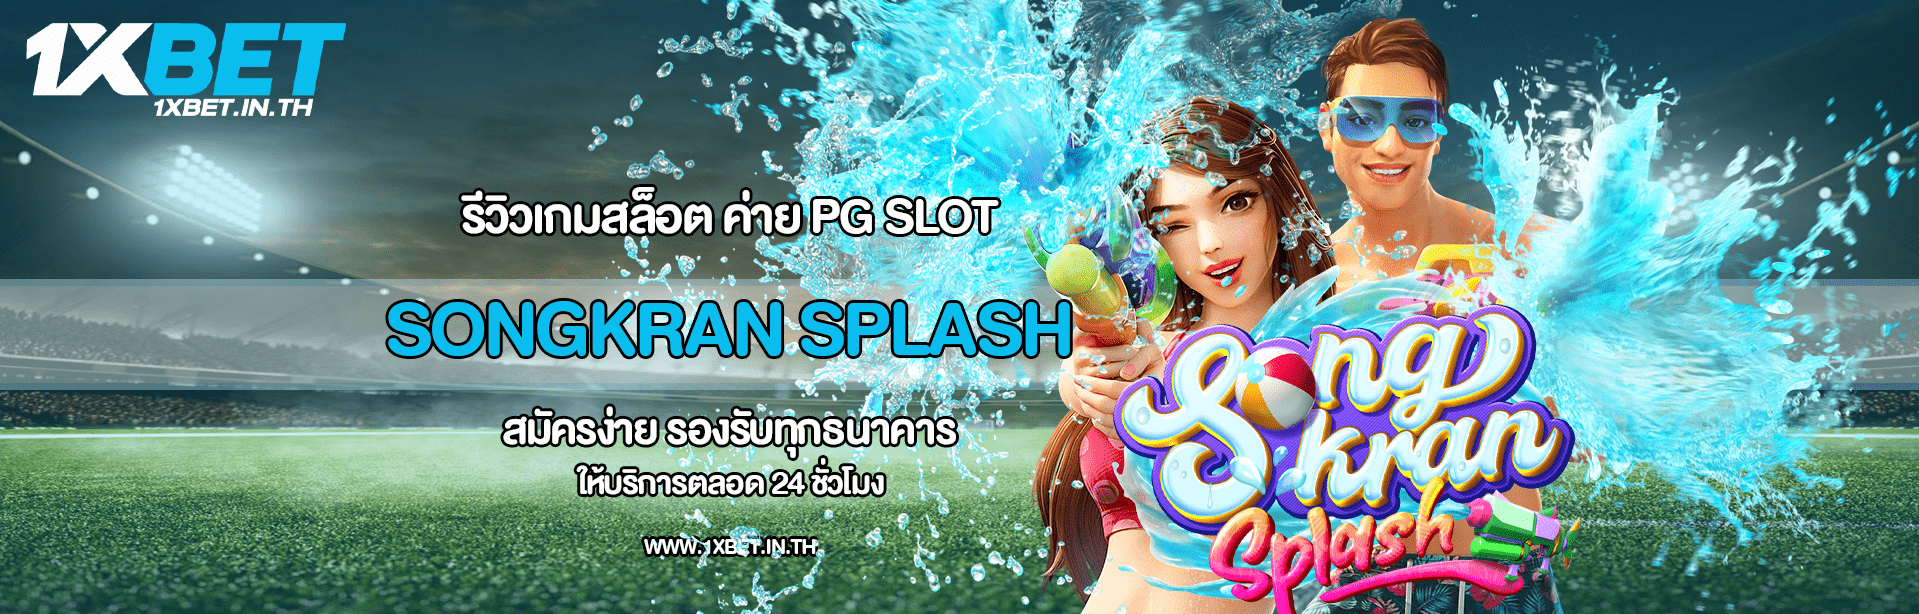 รีวิว Songkran Splash